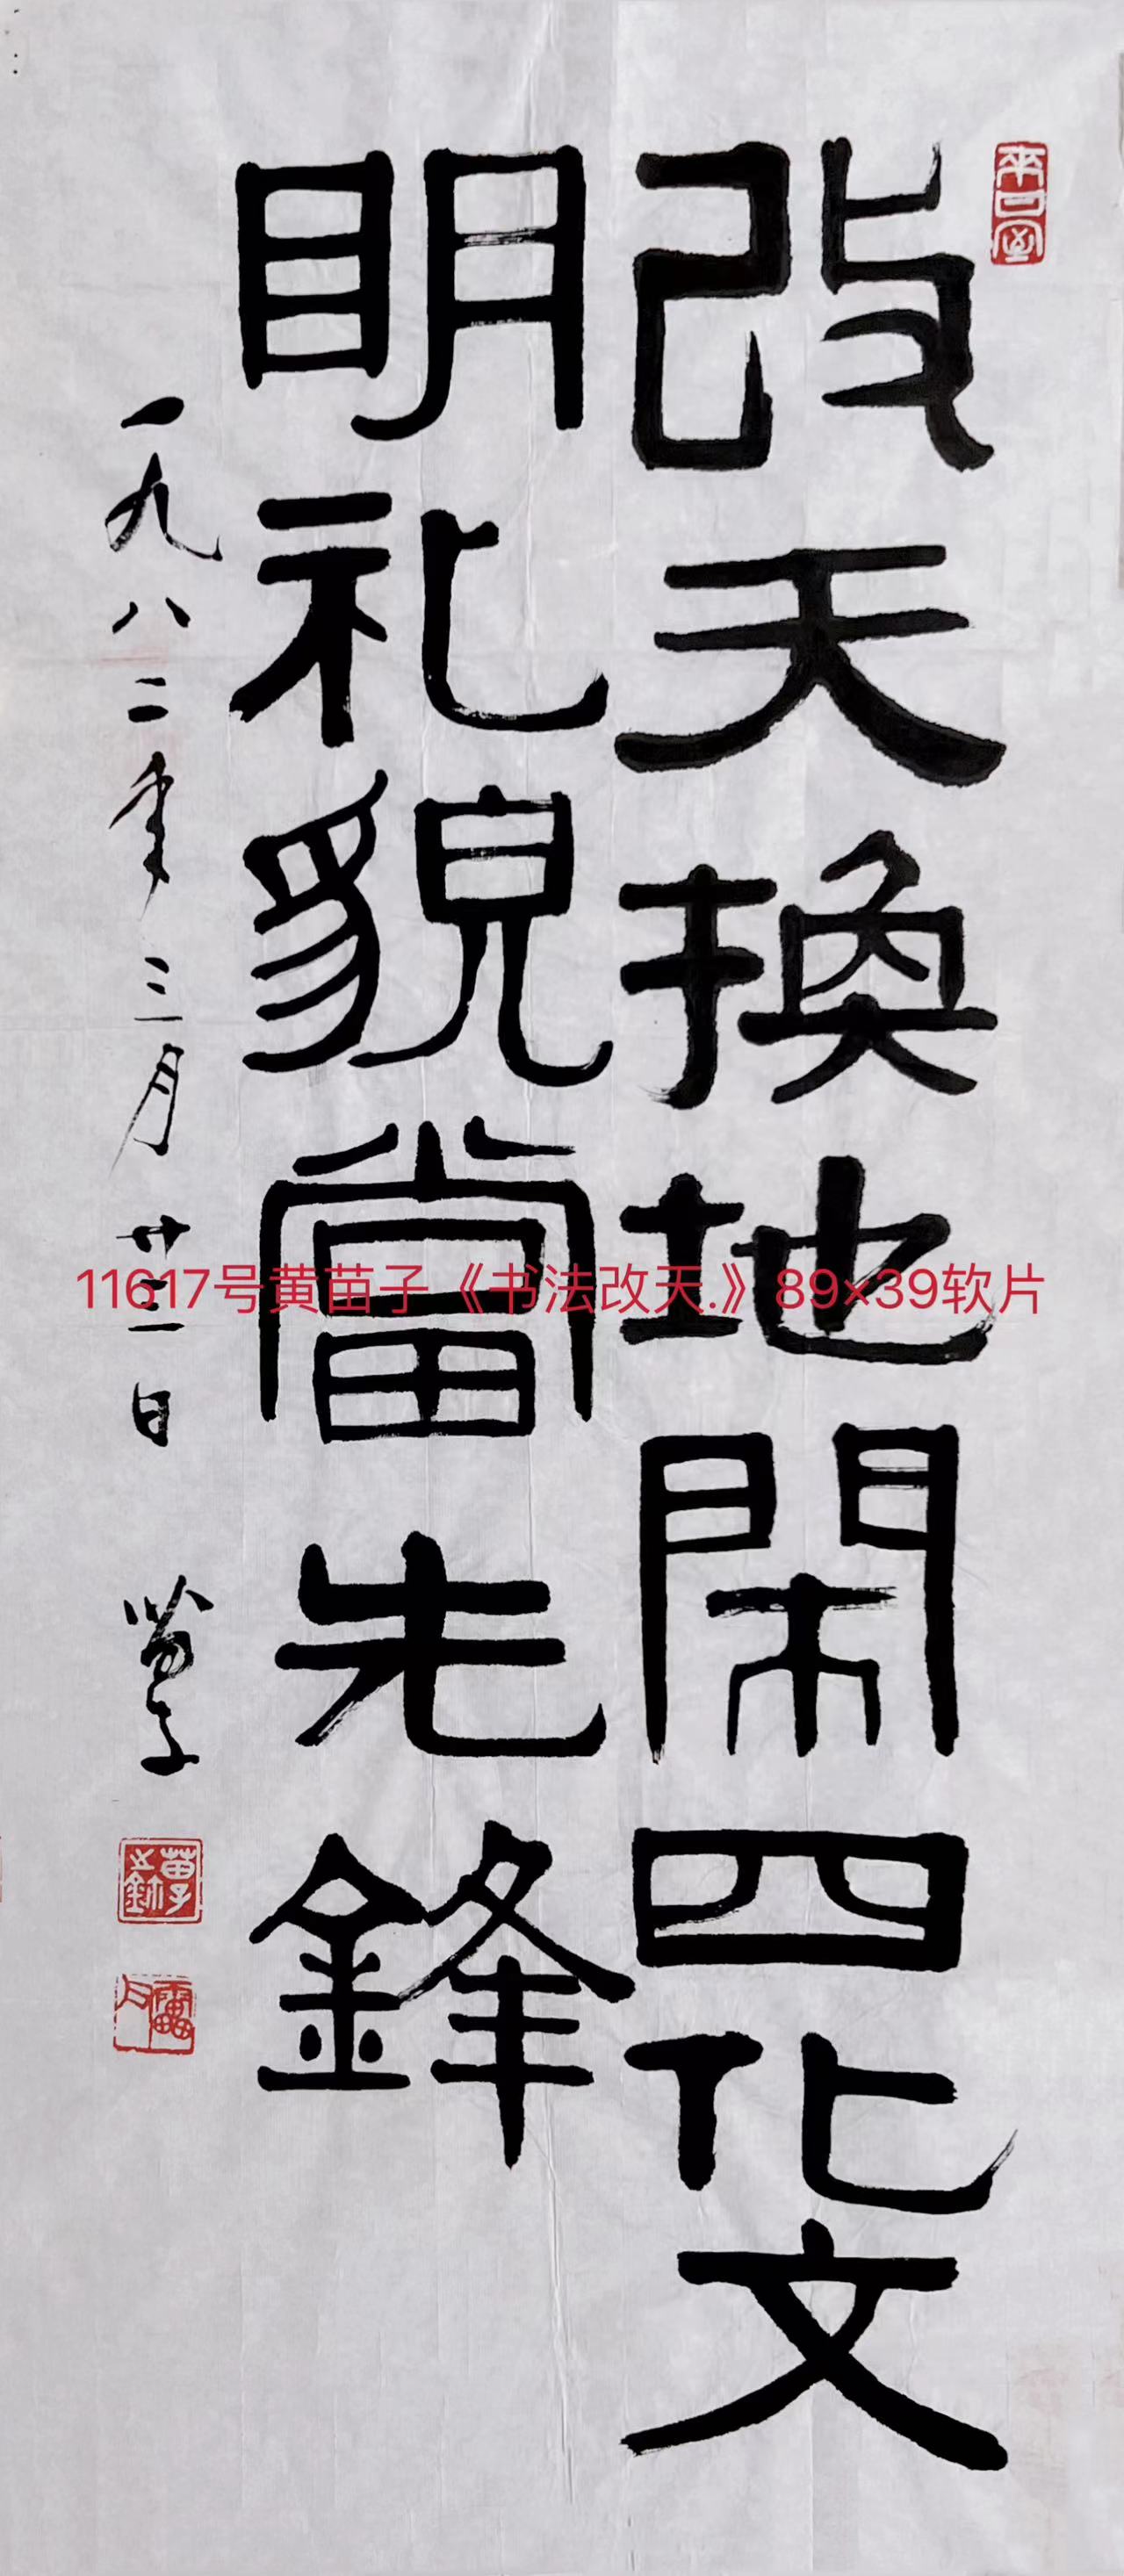 11617号黄苗子《书法改天.》89×39软片.jpg